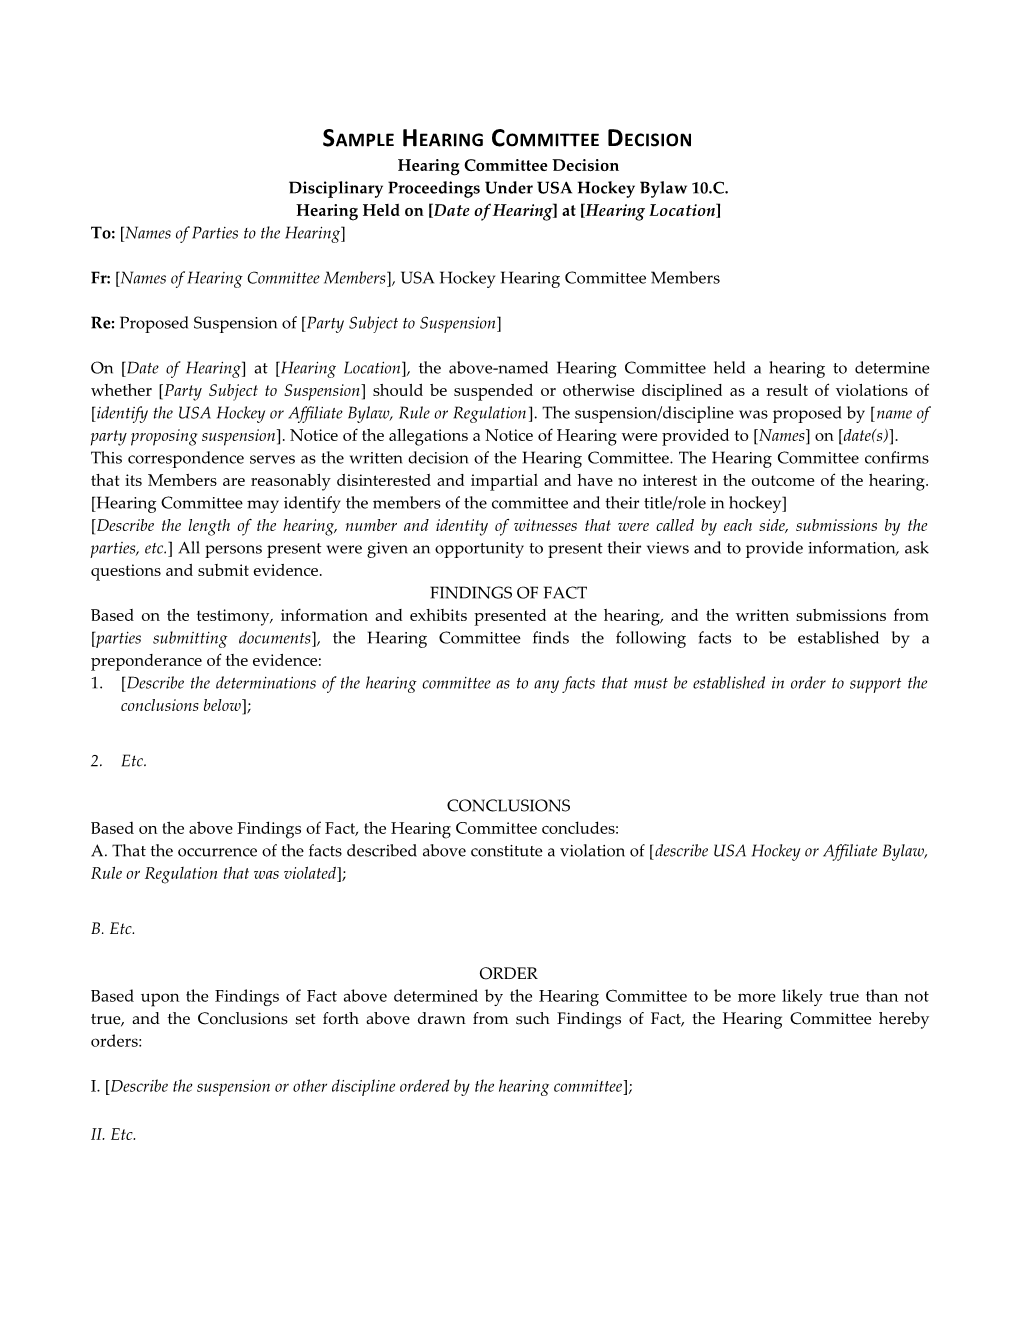 Disciplinary Proceedings Under USA Hockey Bylaw 10.C